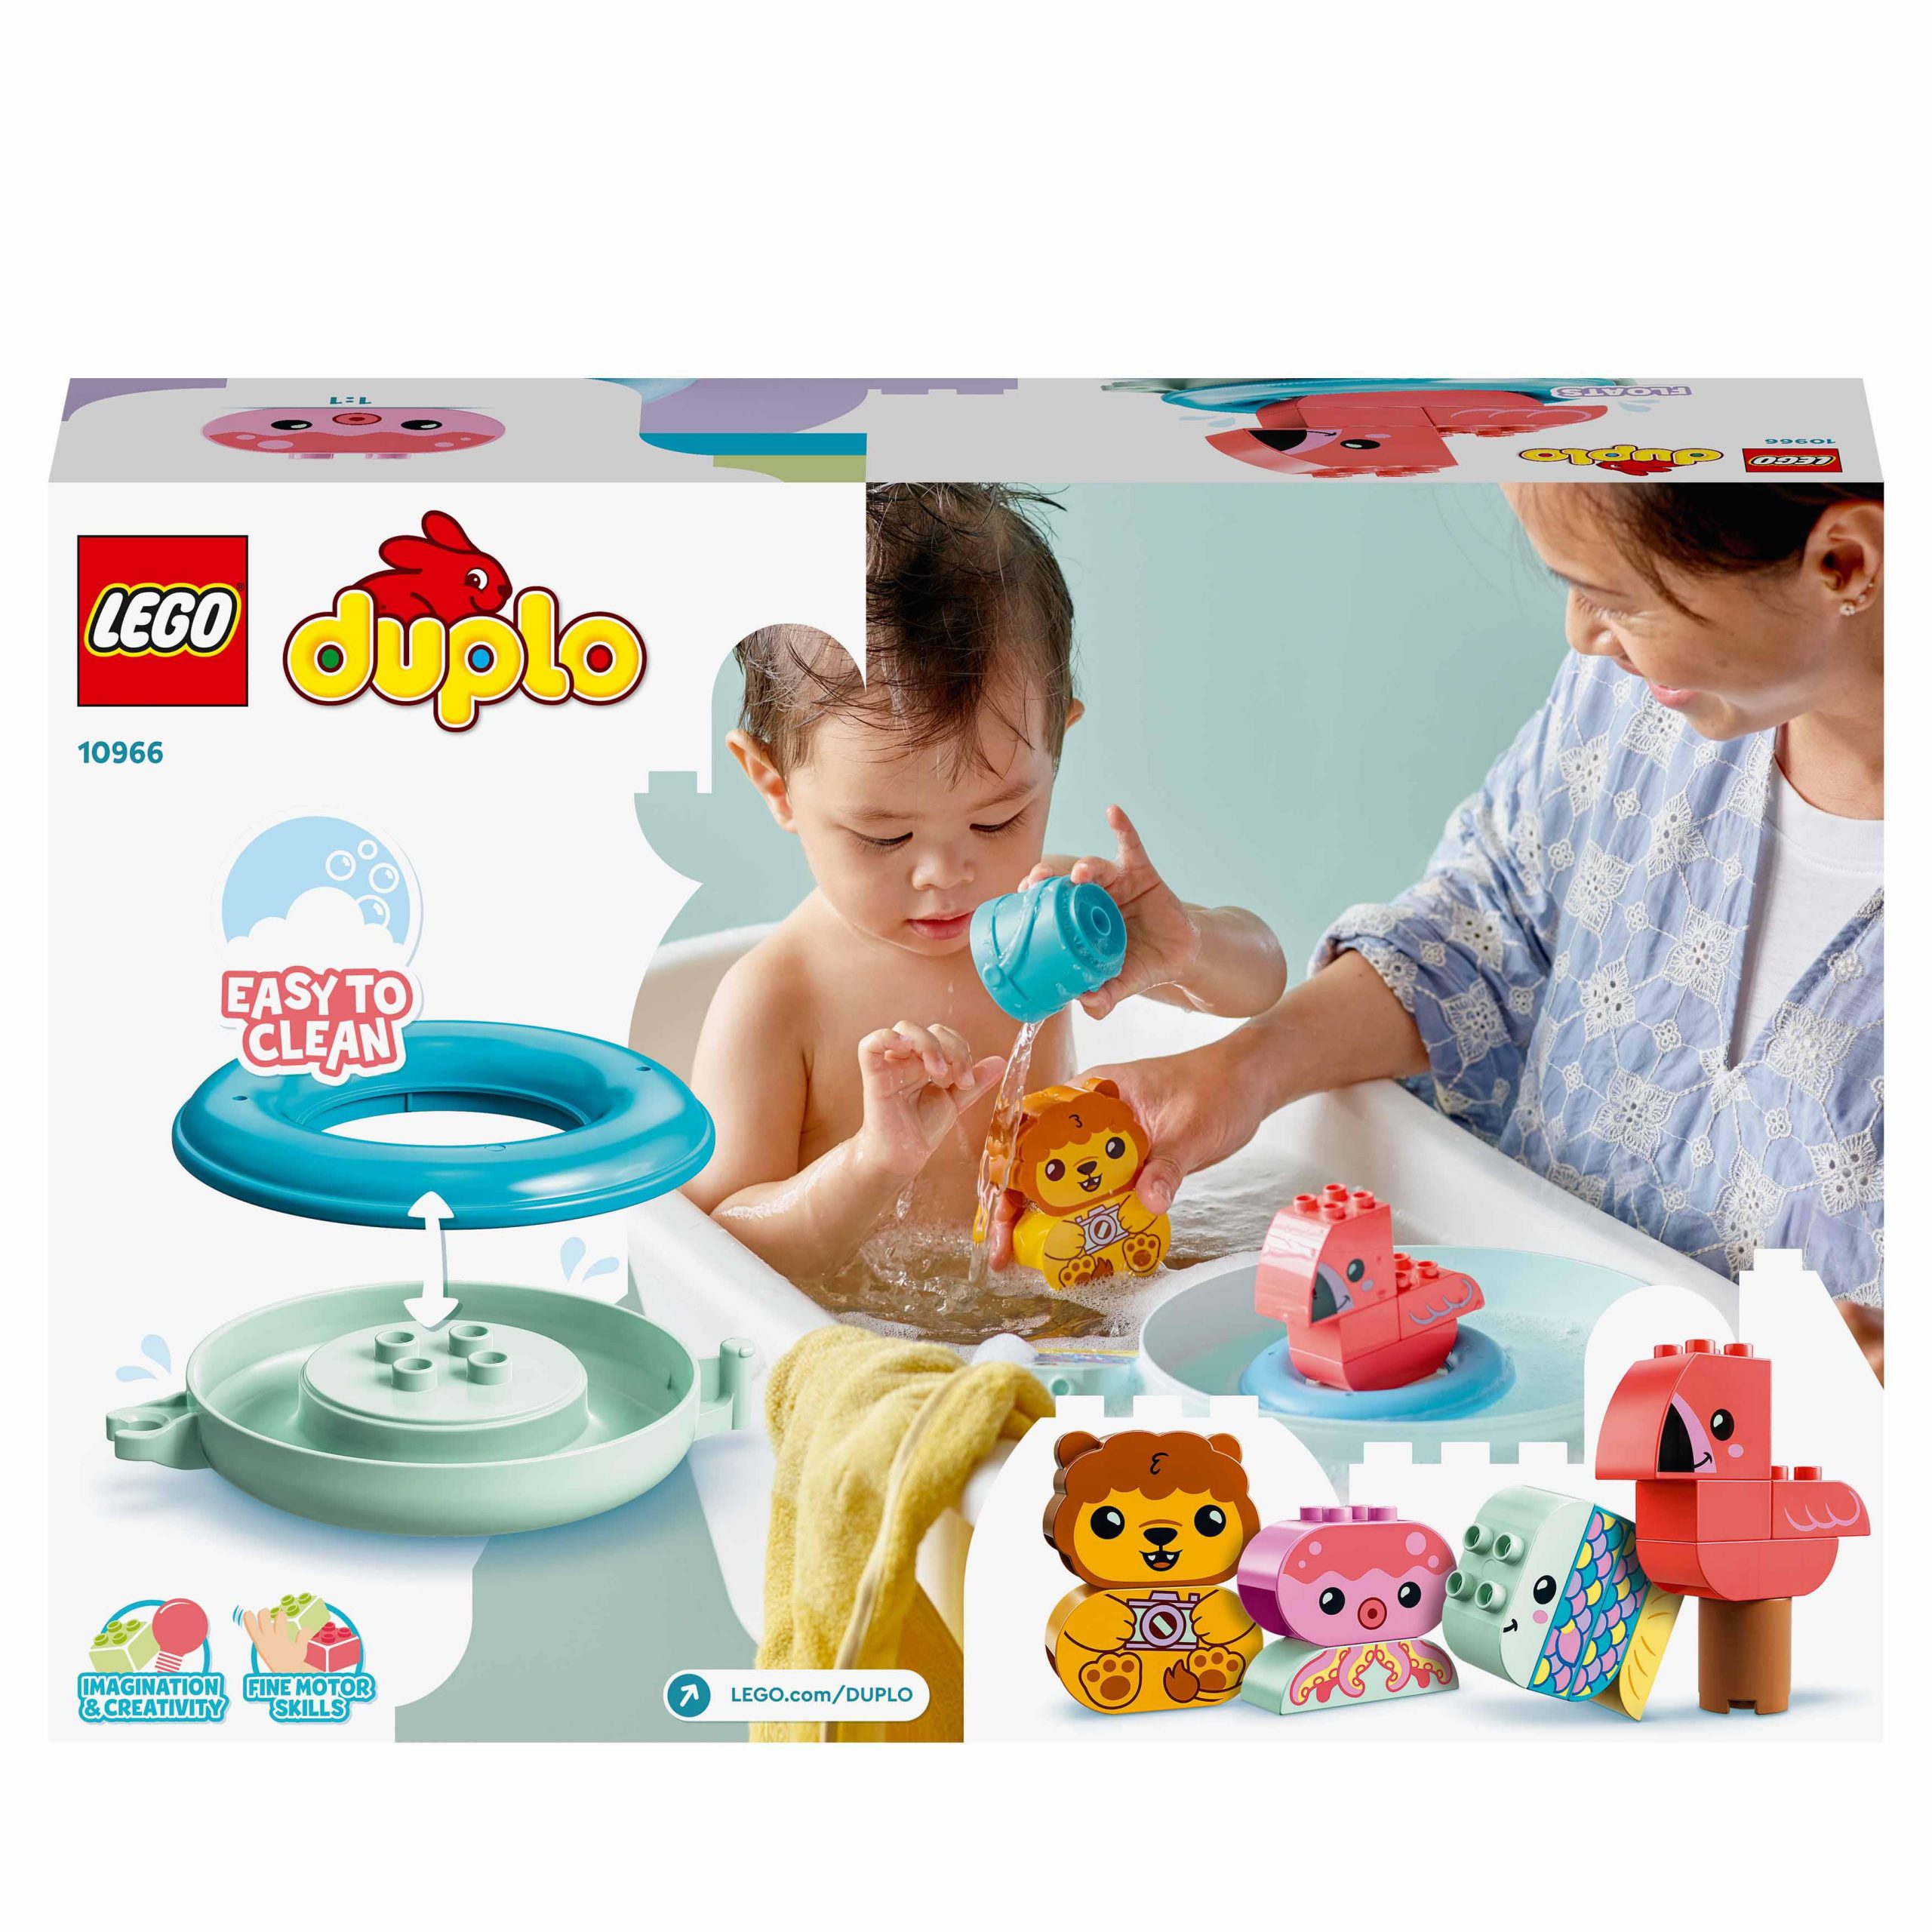 Lego duplo ora del bagnetto: isola degli animali galleggiante, giochi per vasca da bagno per bambini di 1,5+ anni, 10966 - LEGO DUPLO, Lego